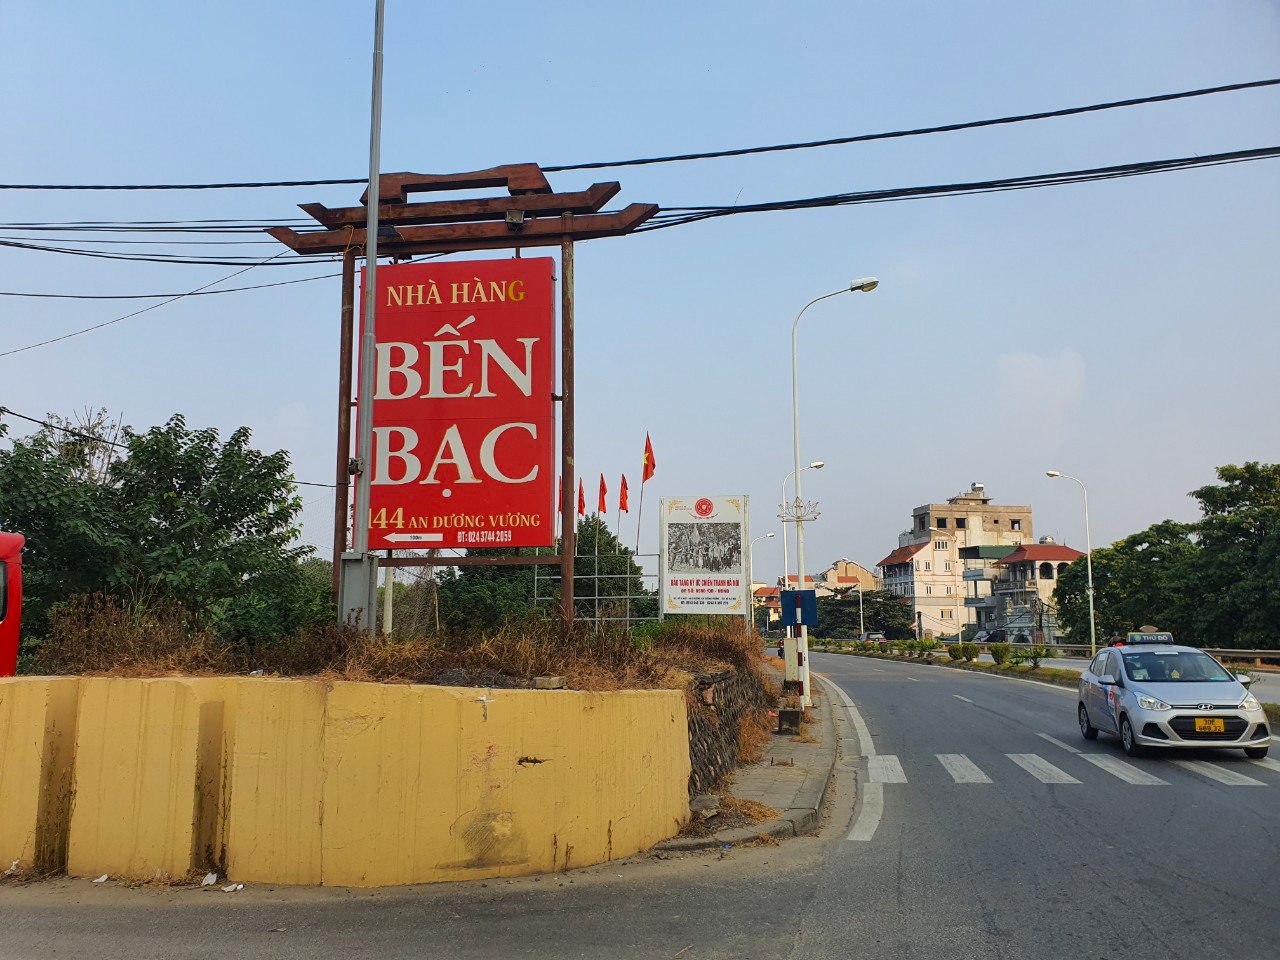 Nhà hàng Bến Bạc treo biển chỉ dẫn lớn trên đường An Dương Vương.